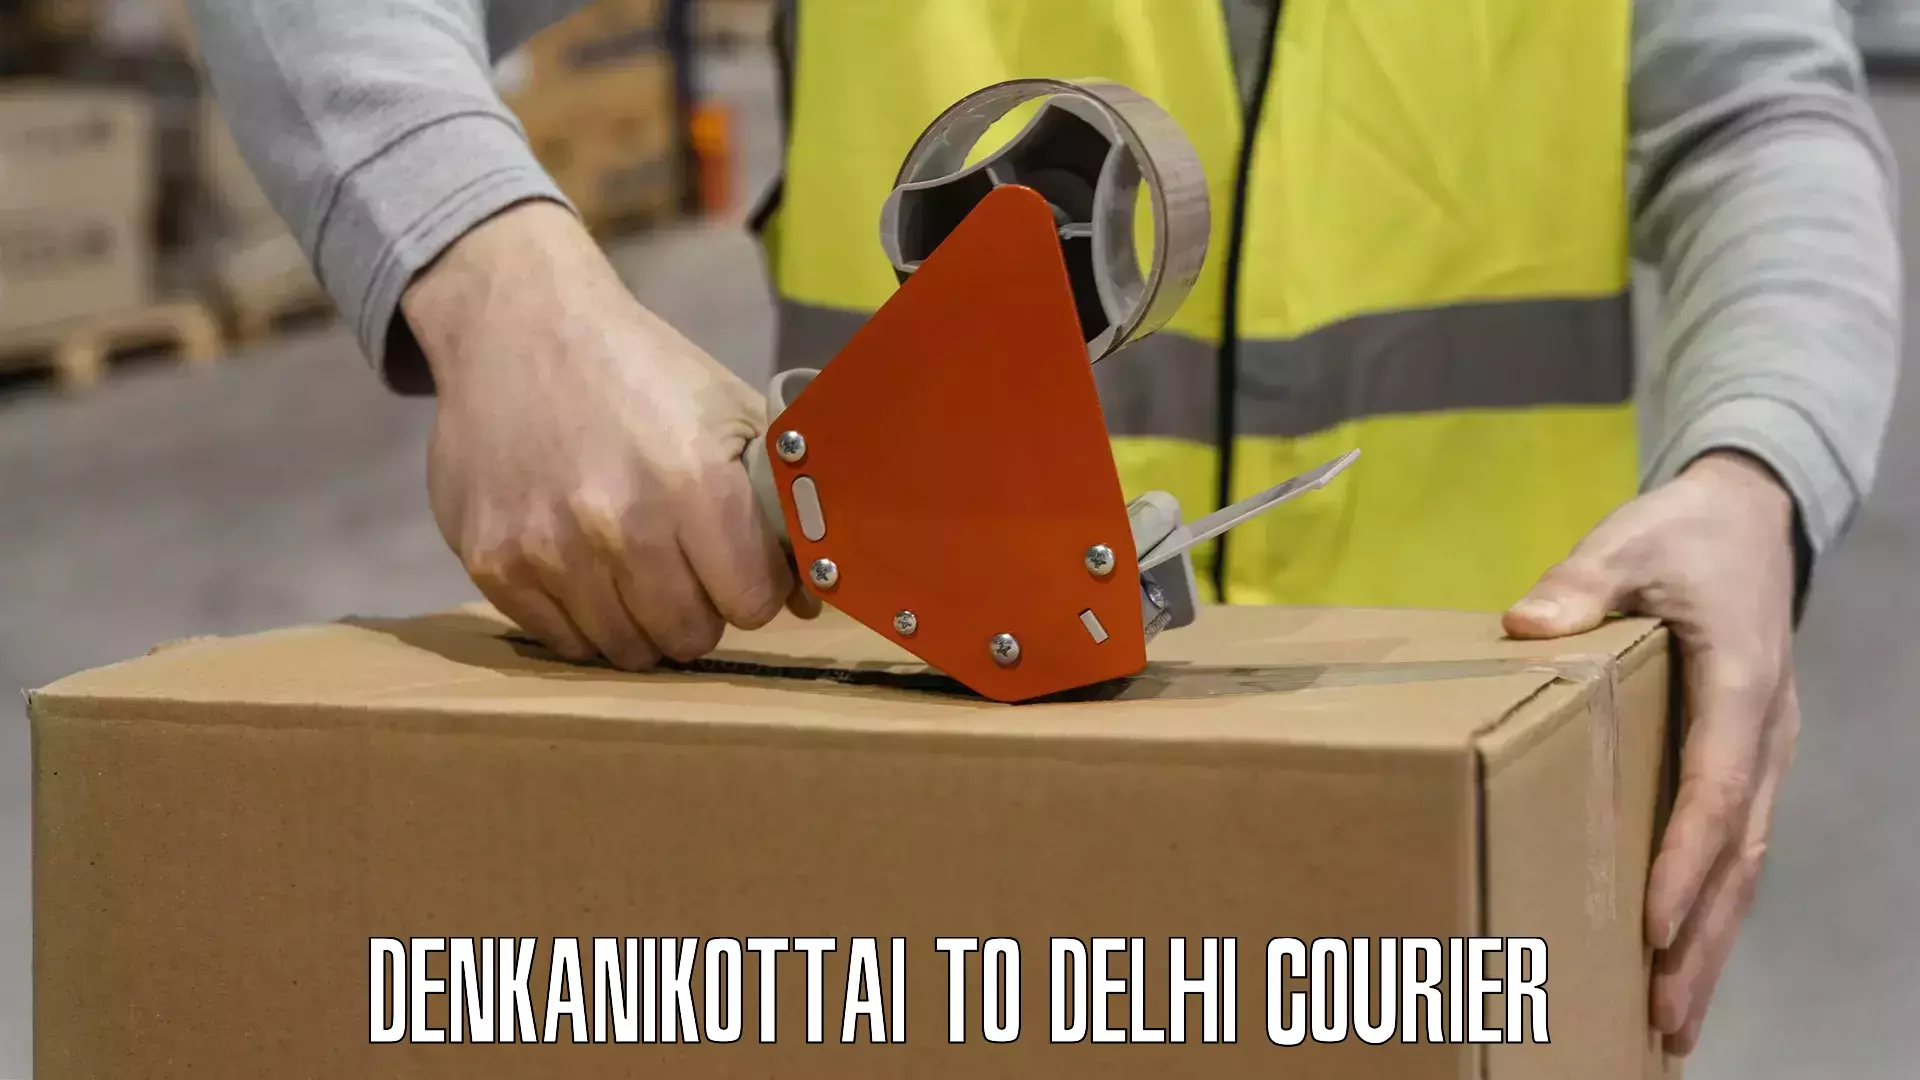 Optimized shipping services Denkanikottai to Delhi